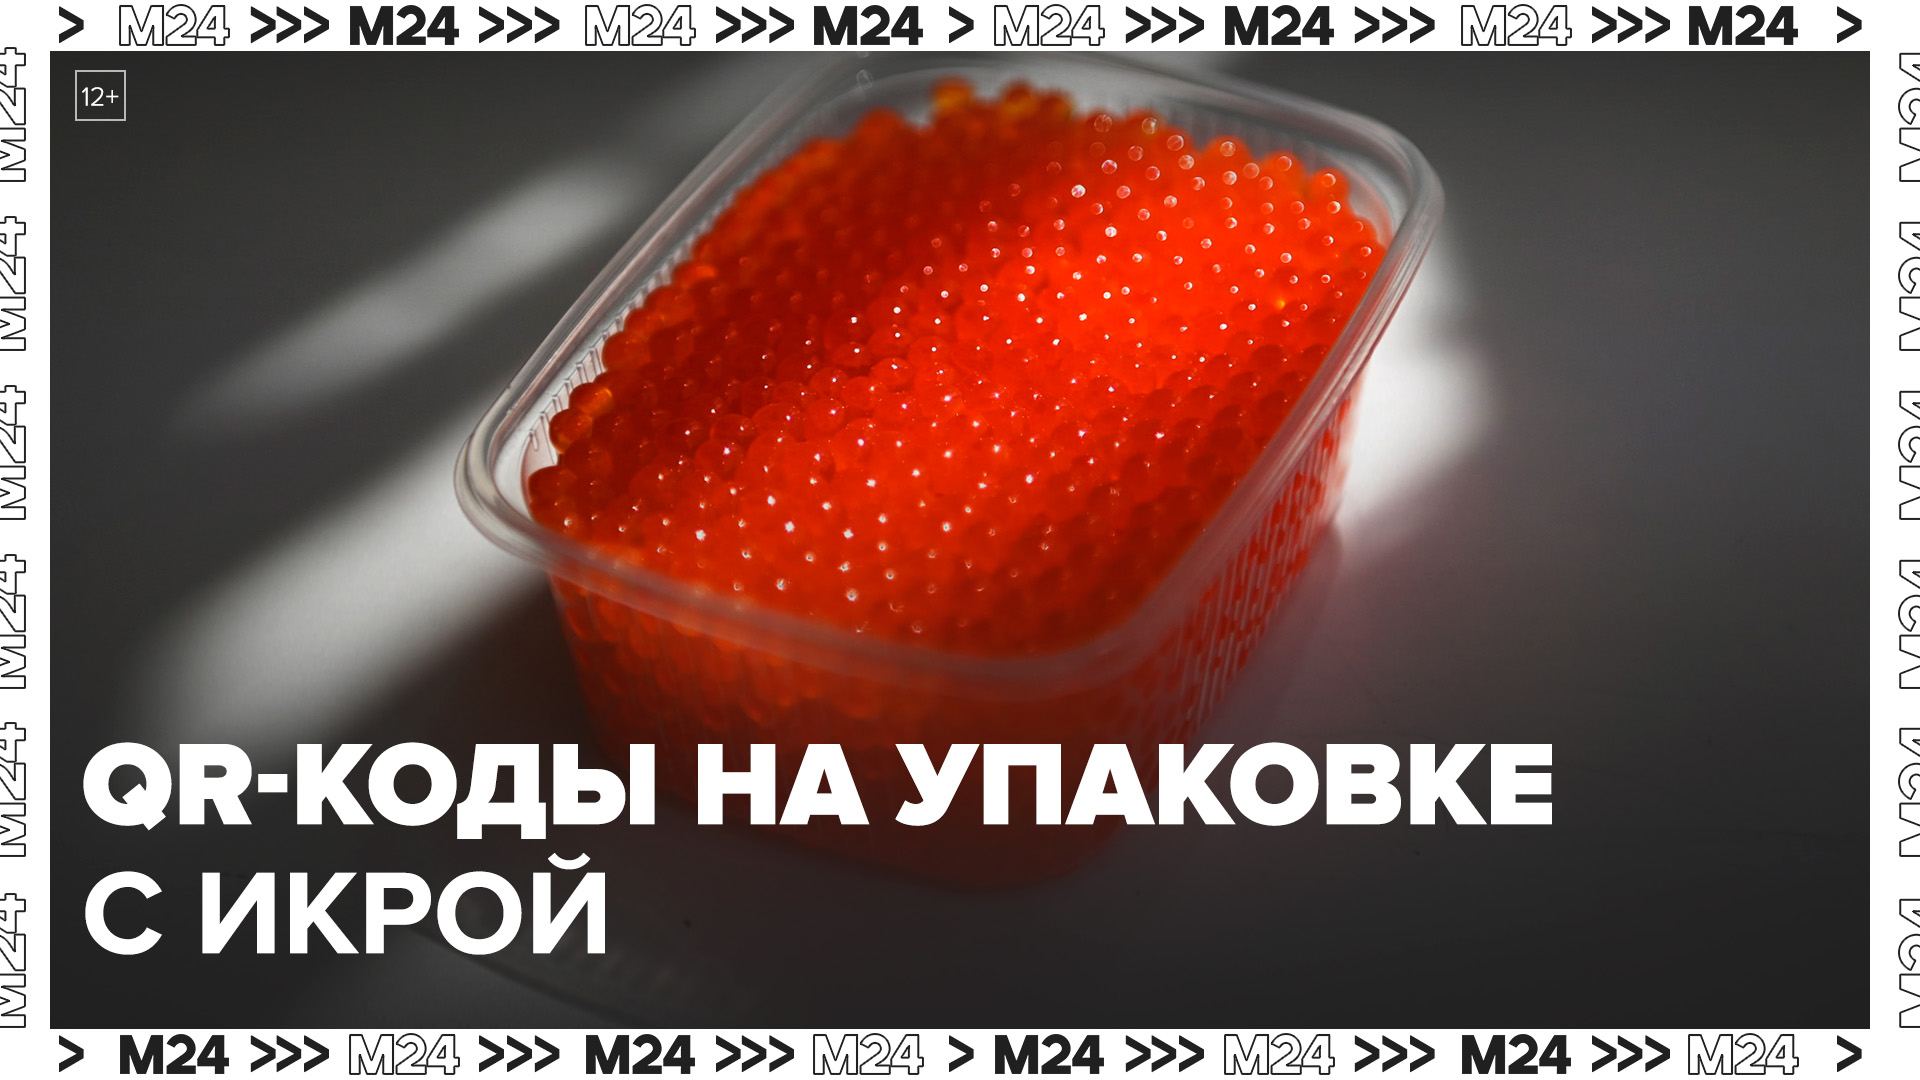 QR-коды российской системы "Честный знак" появились на упаковках с красной и черной икрой- Москва 24